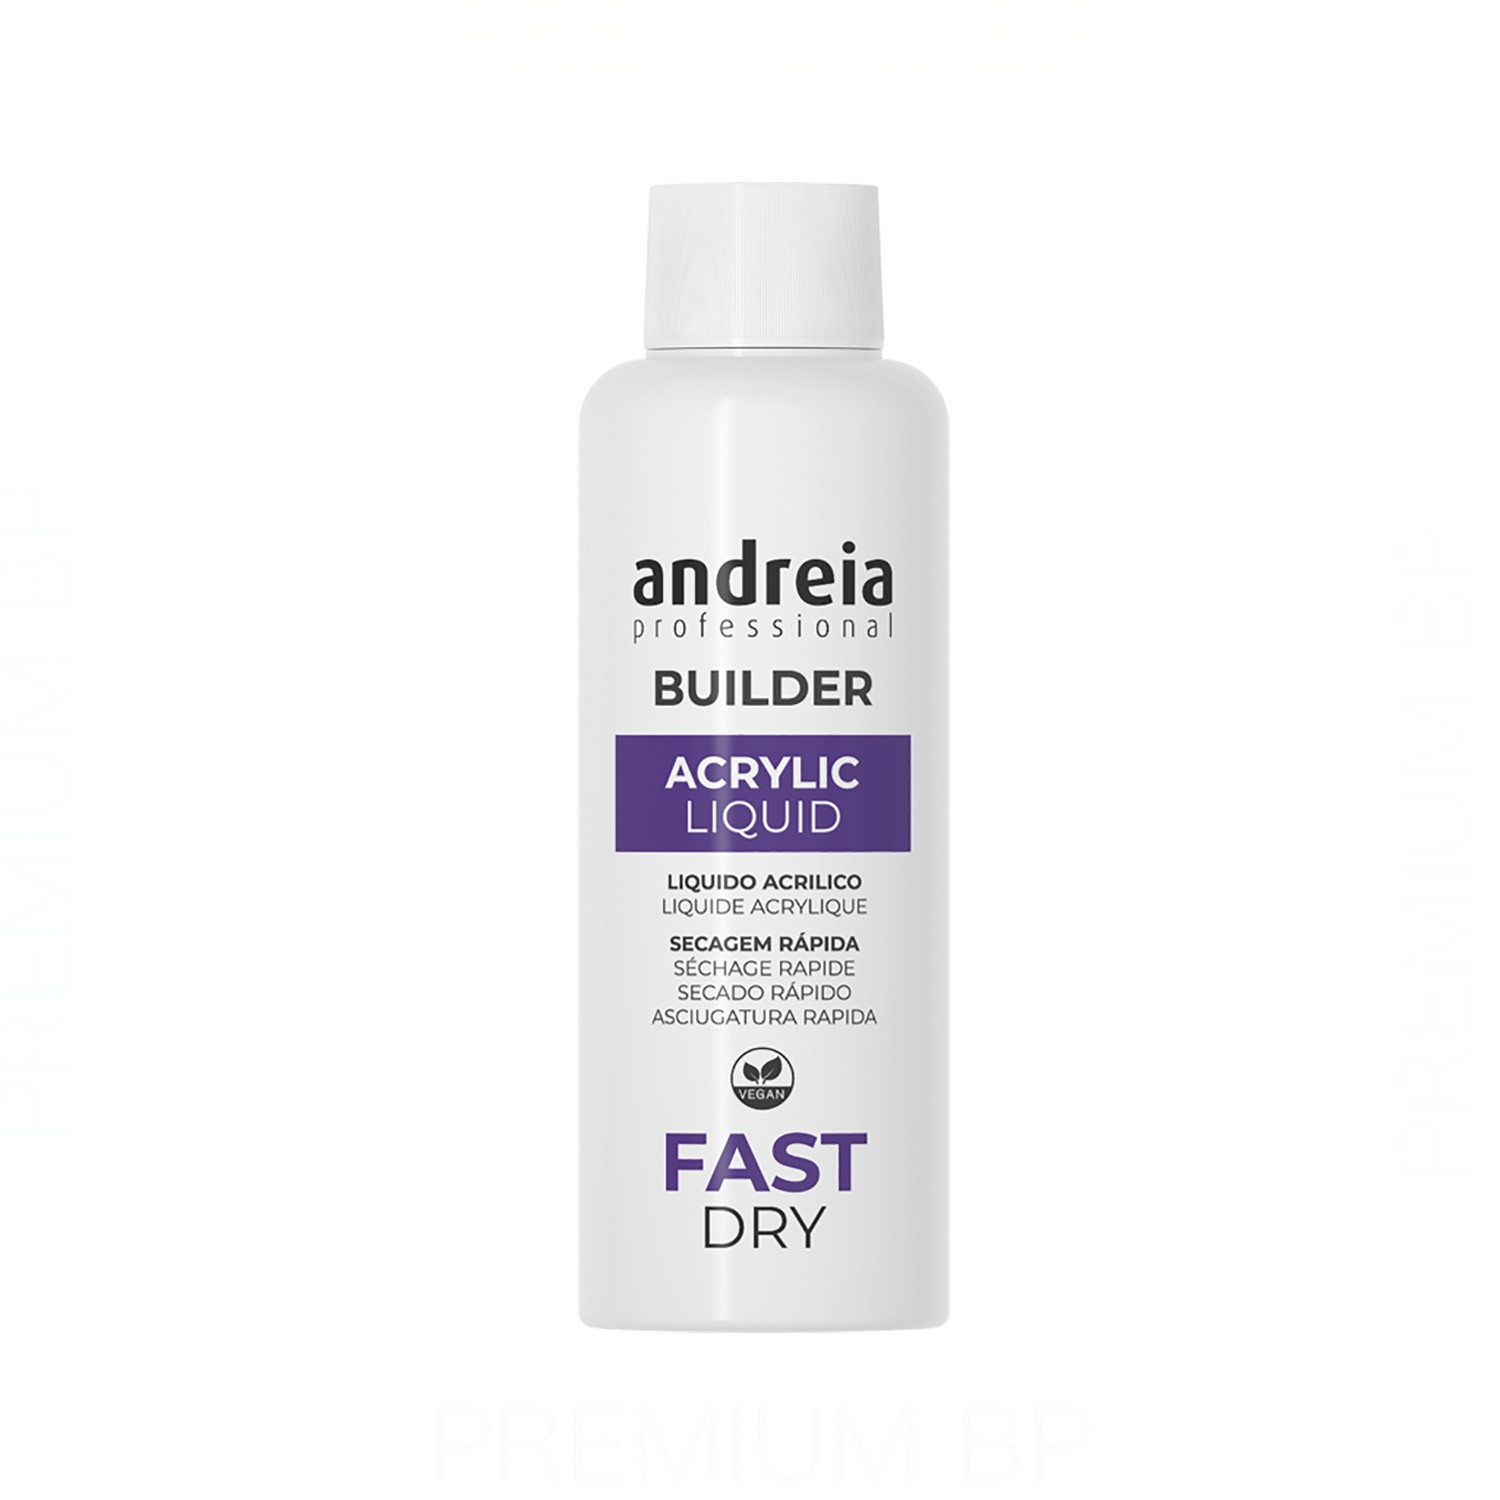 Andreia Professional Builder Acrylic Liquid Fast Dry Liquido Acrilico Secado Rapido 100 ml